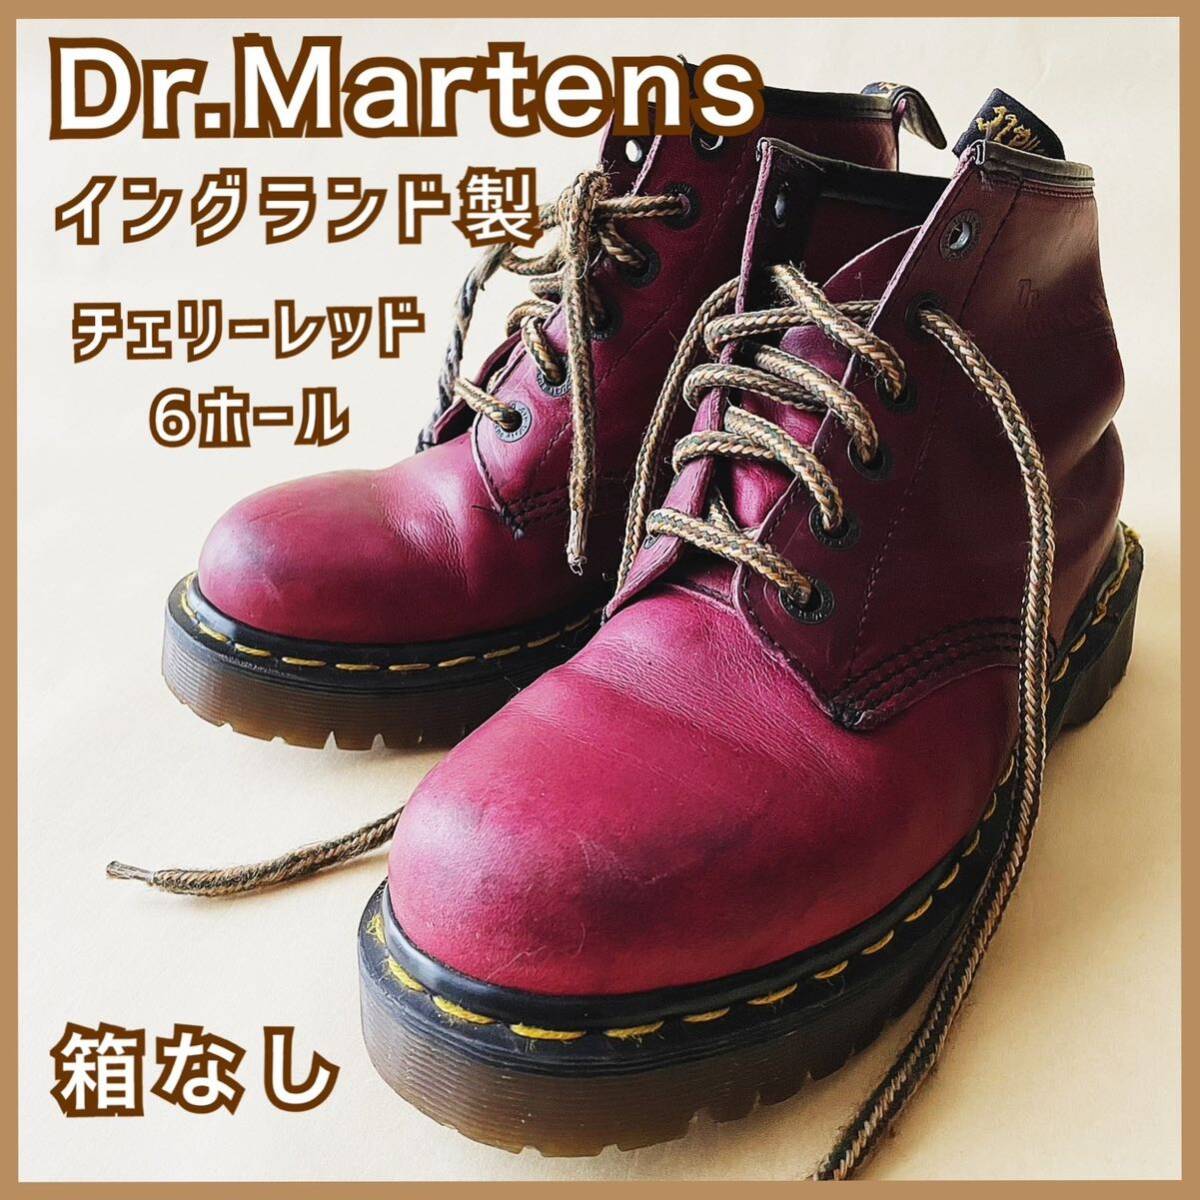 現品限り Dr.Martens ドクターマーチン イングランド製6ホール チェリーレッド メンズ レディースブーツ 古着used 箱なし_画像1